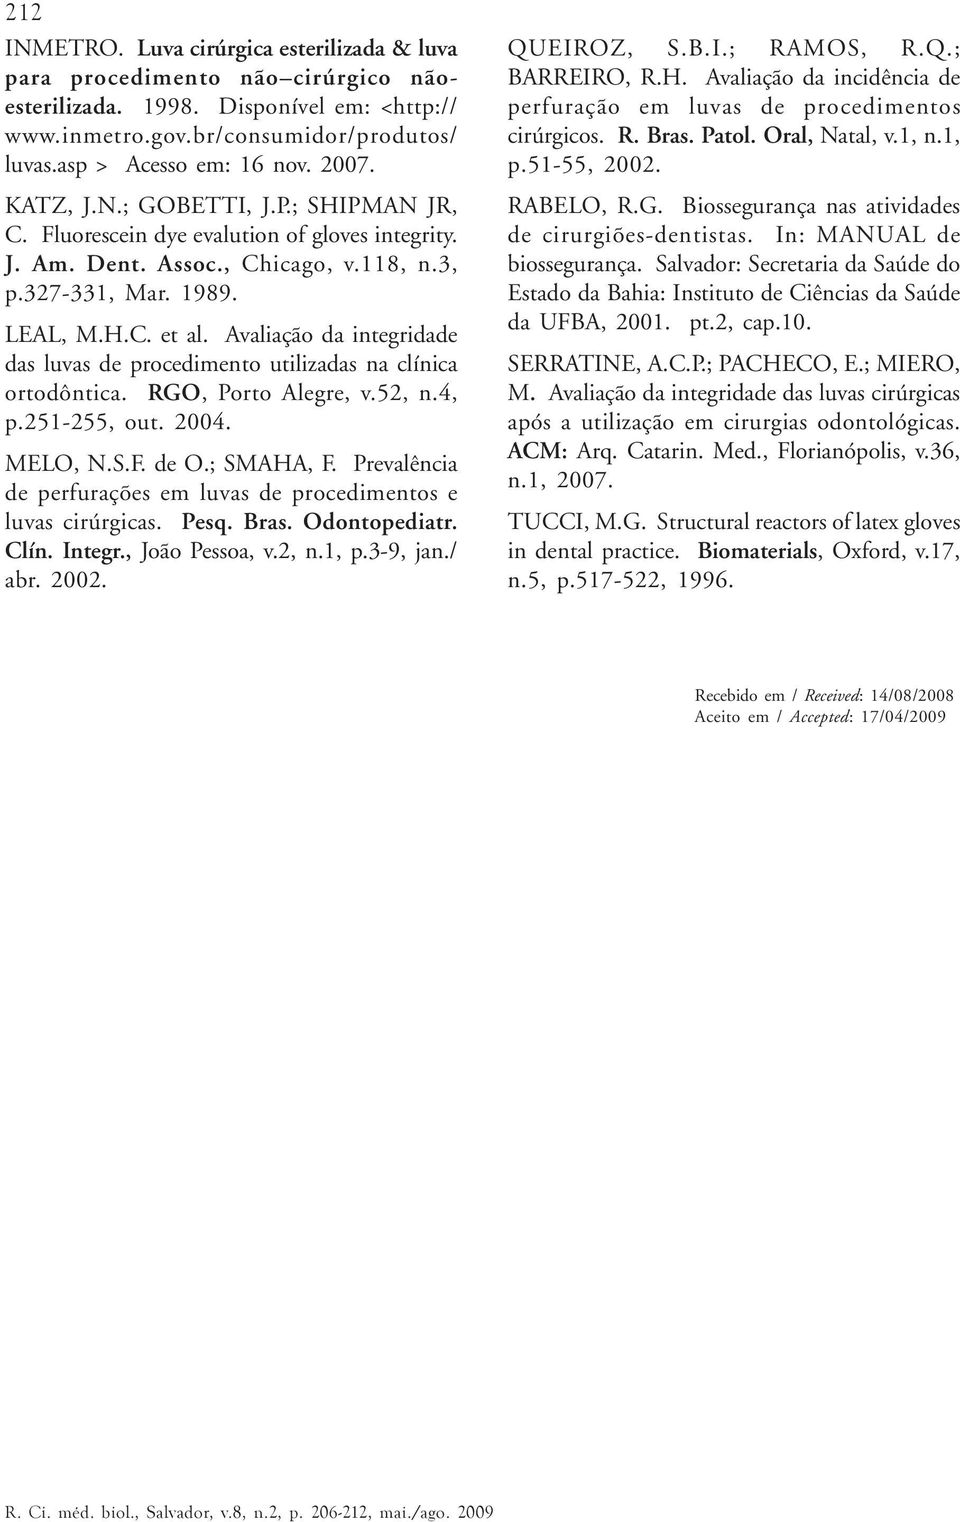 Avaliação da integridade das luvas de procedimento utilizadas na clínica ortodôntica. RGO, Porto Alegre, v.52, n.4, p.251-255, out. 2004. MELO, N.S.F. de O.; SMAHA, F.